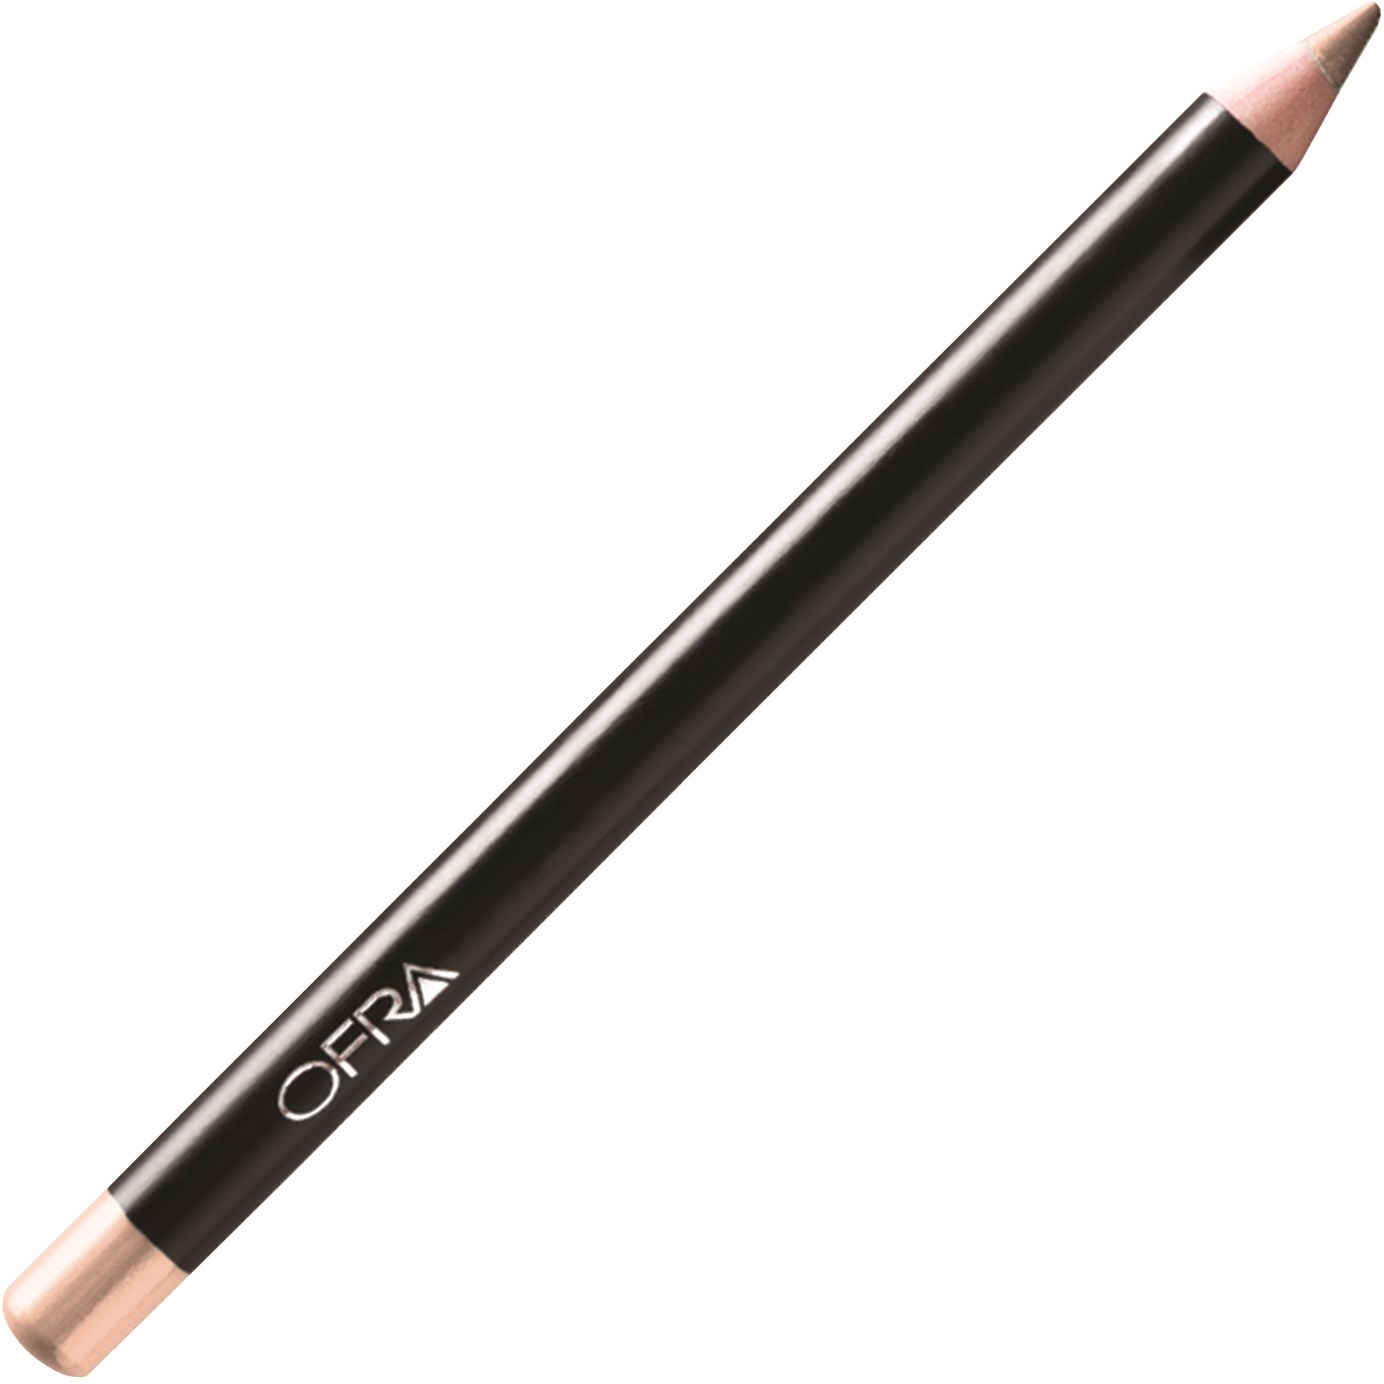 Bilde av Ofra Cosmetics Eyeliner Pencil Light Beige